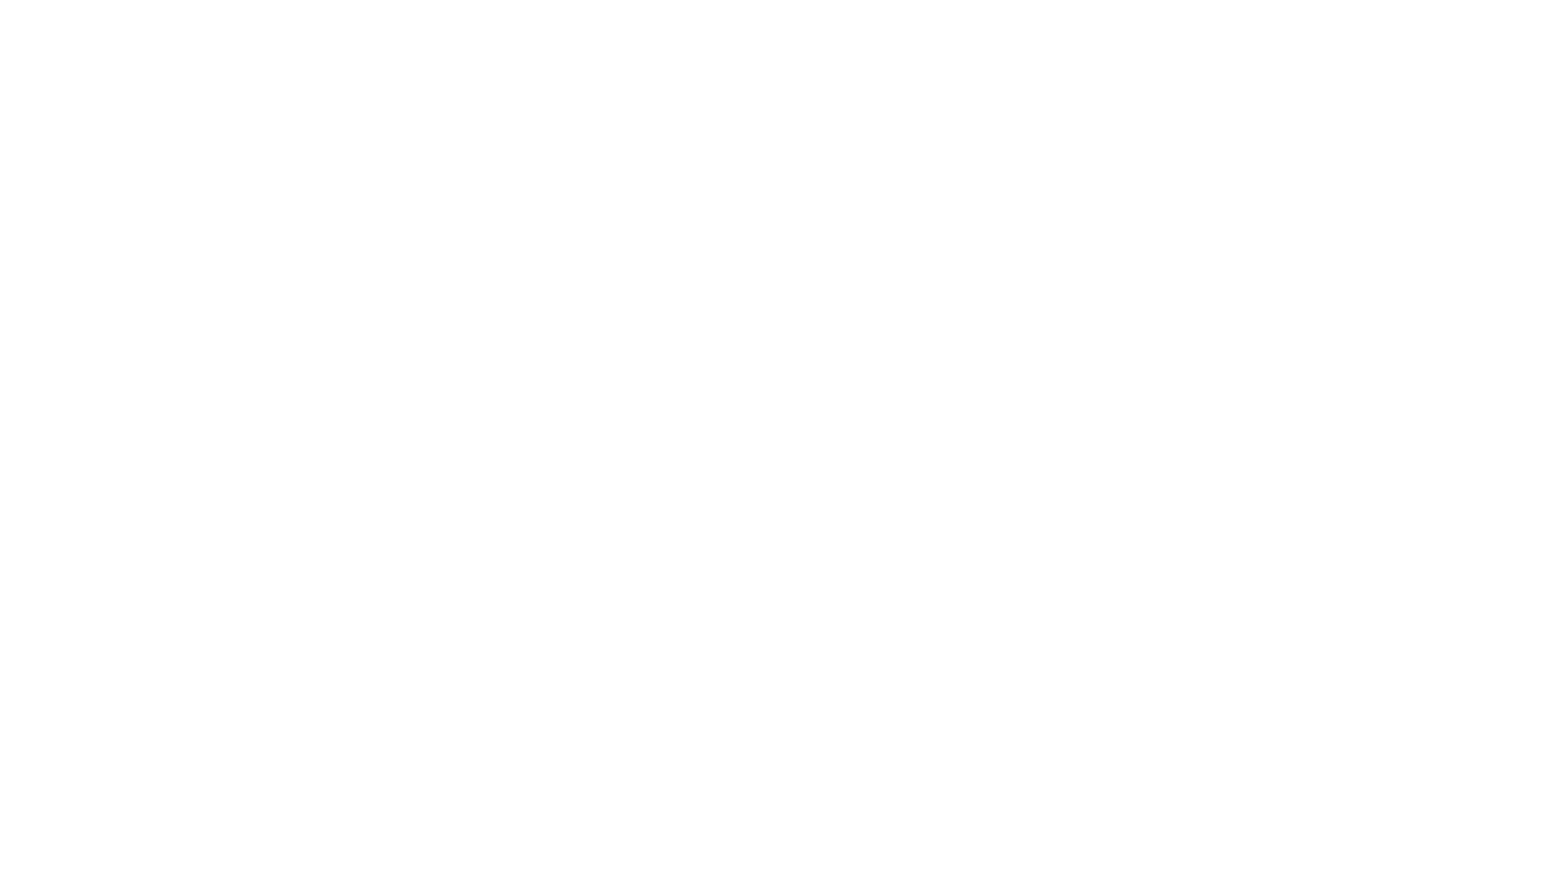 Höegh Autoliners logo for dark backgrounds (transparent PNG)